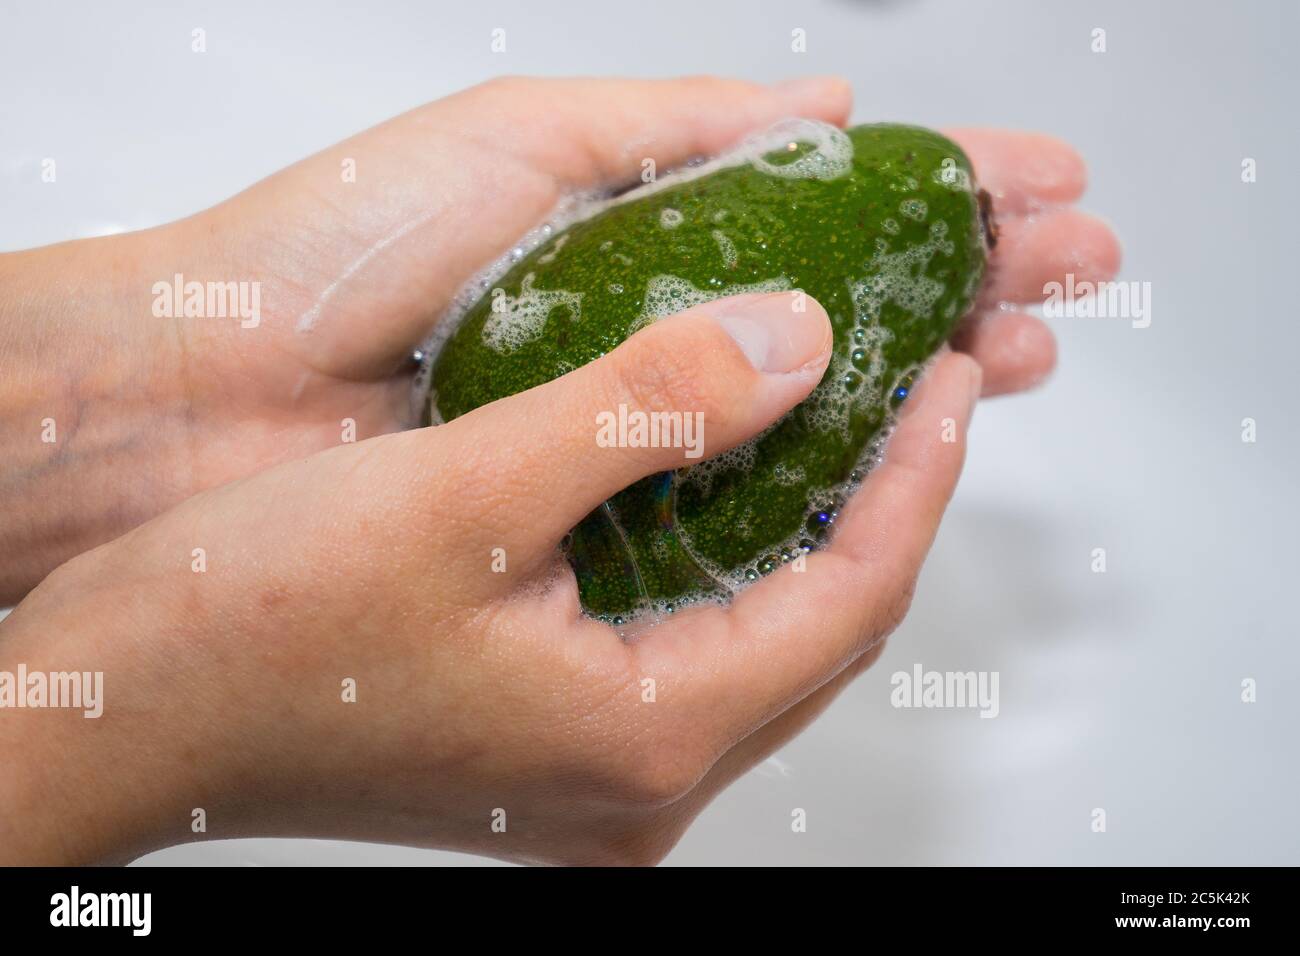 laver les fruits avec du savon et de la mousse. Laver les avocats. Mains et  avocat vert savonneux Photo Stock - Alamy